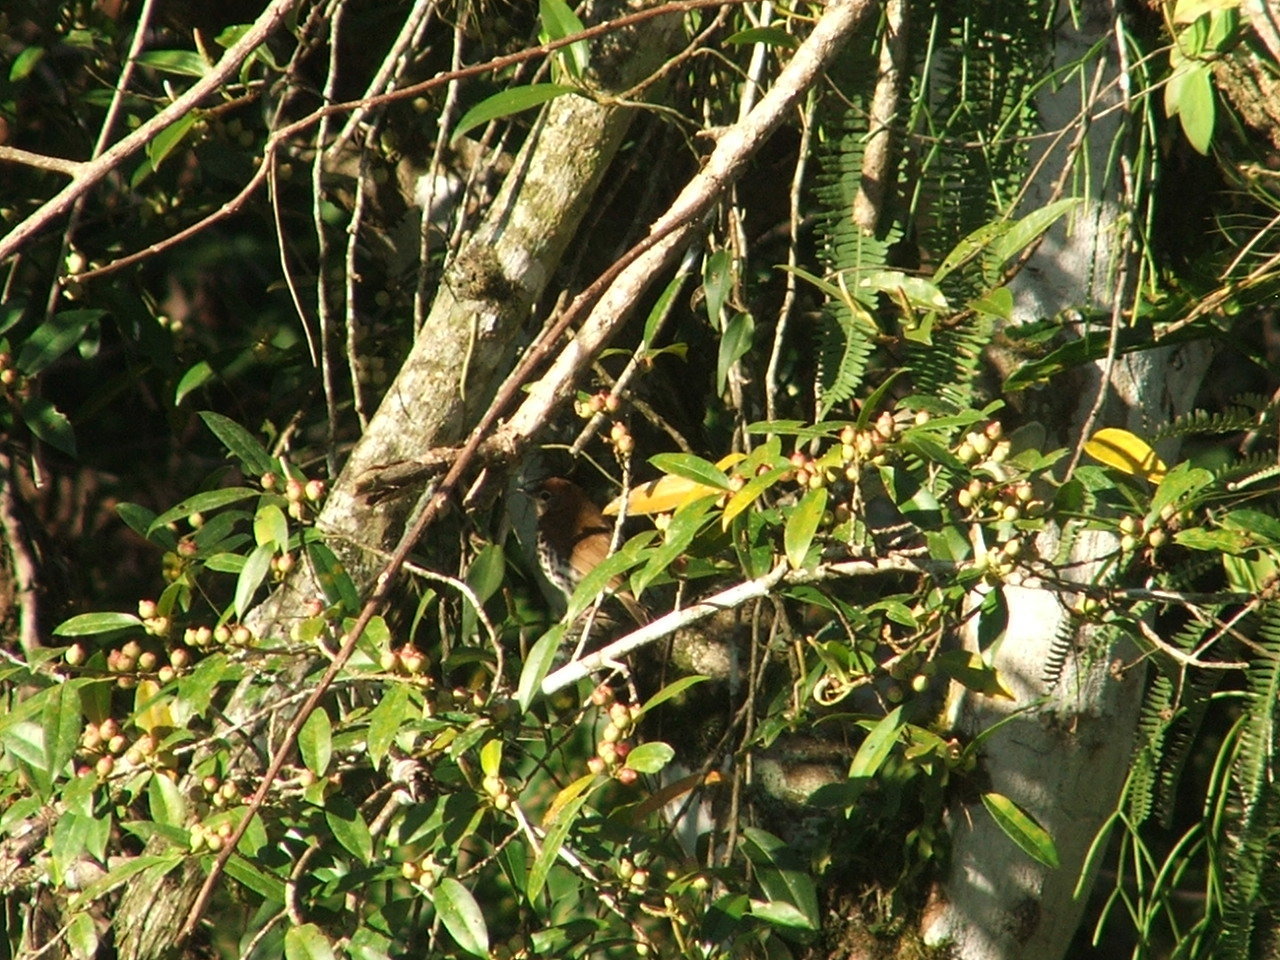 Image of Wood thrush